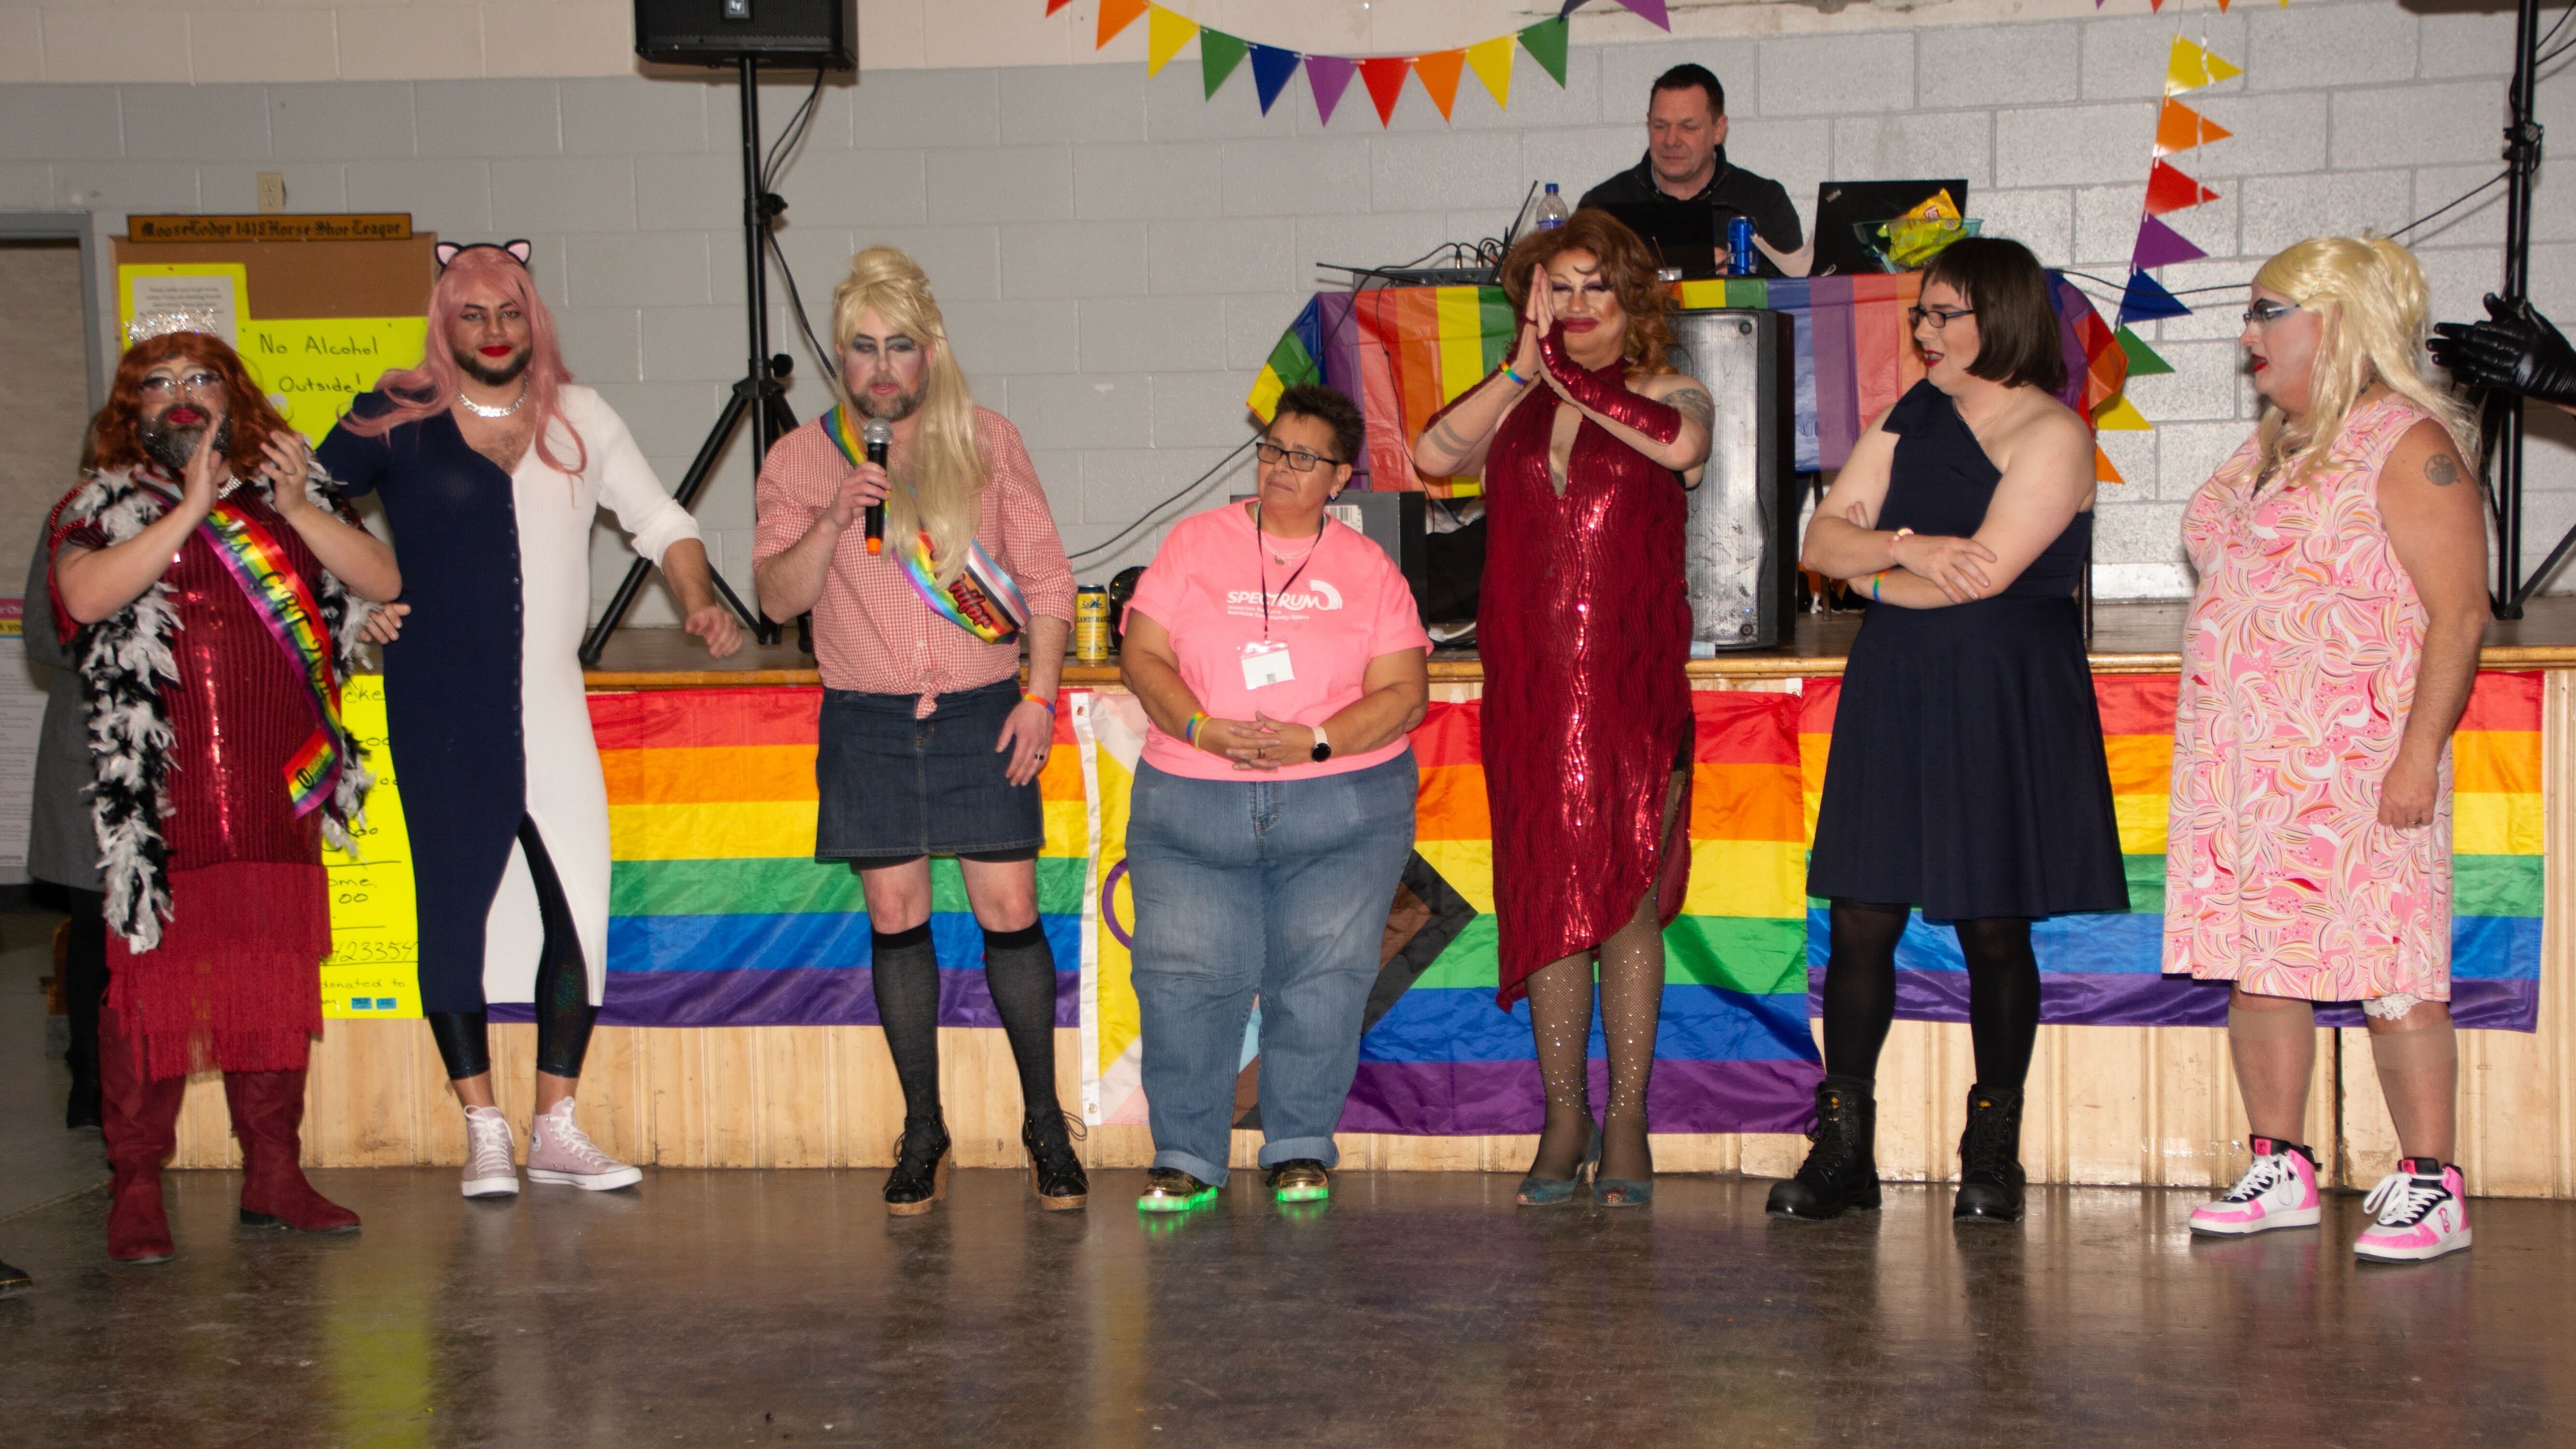 Seven drag queens performing 